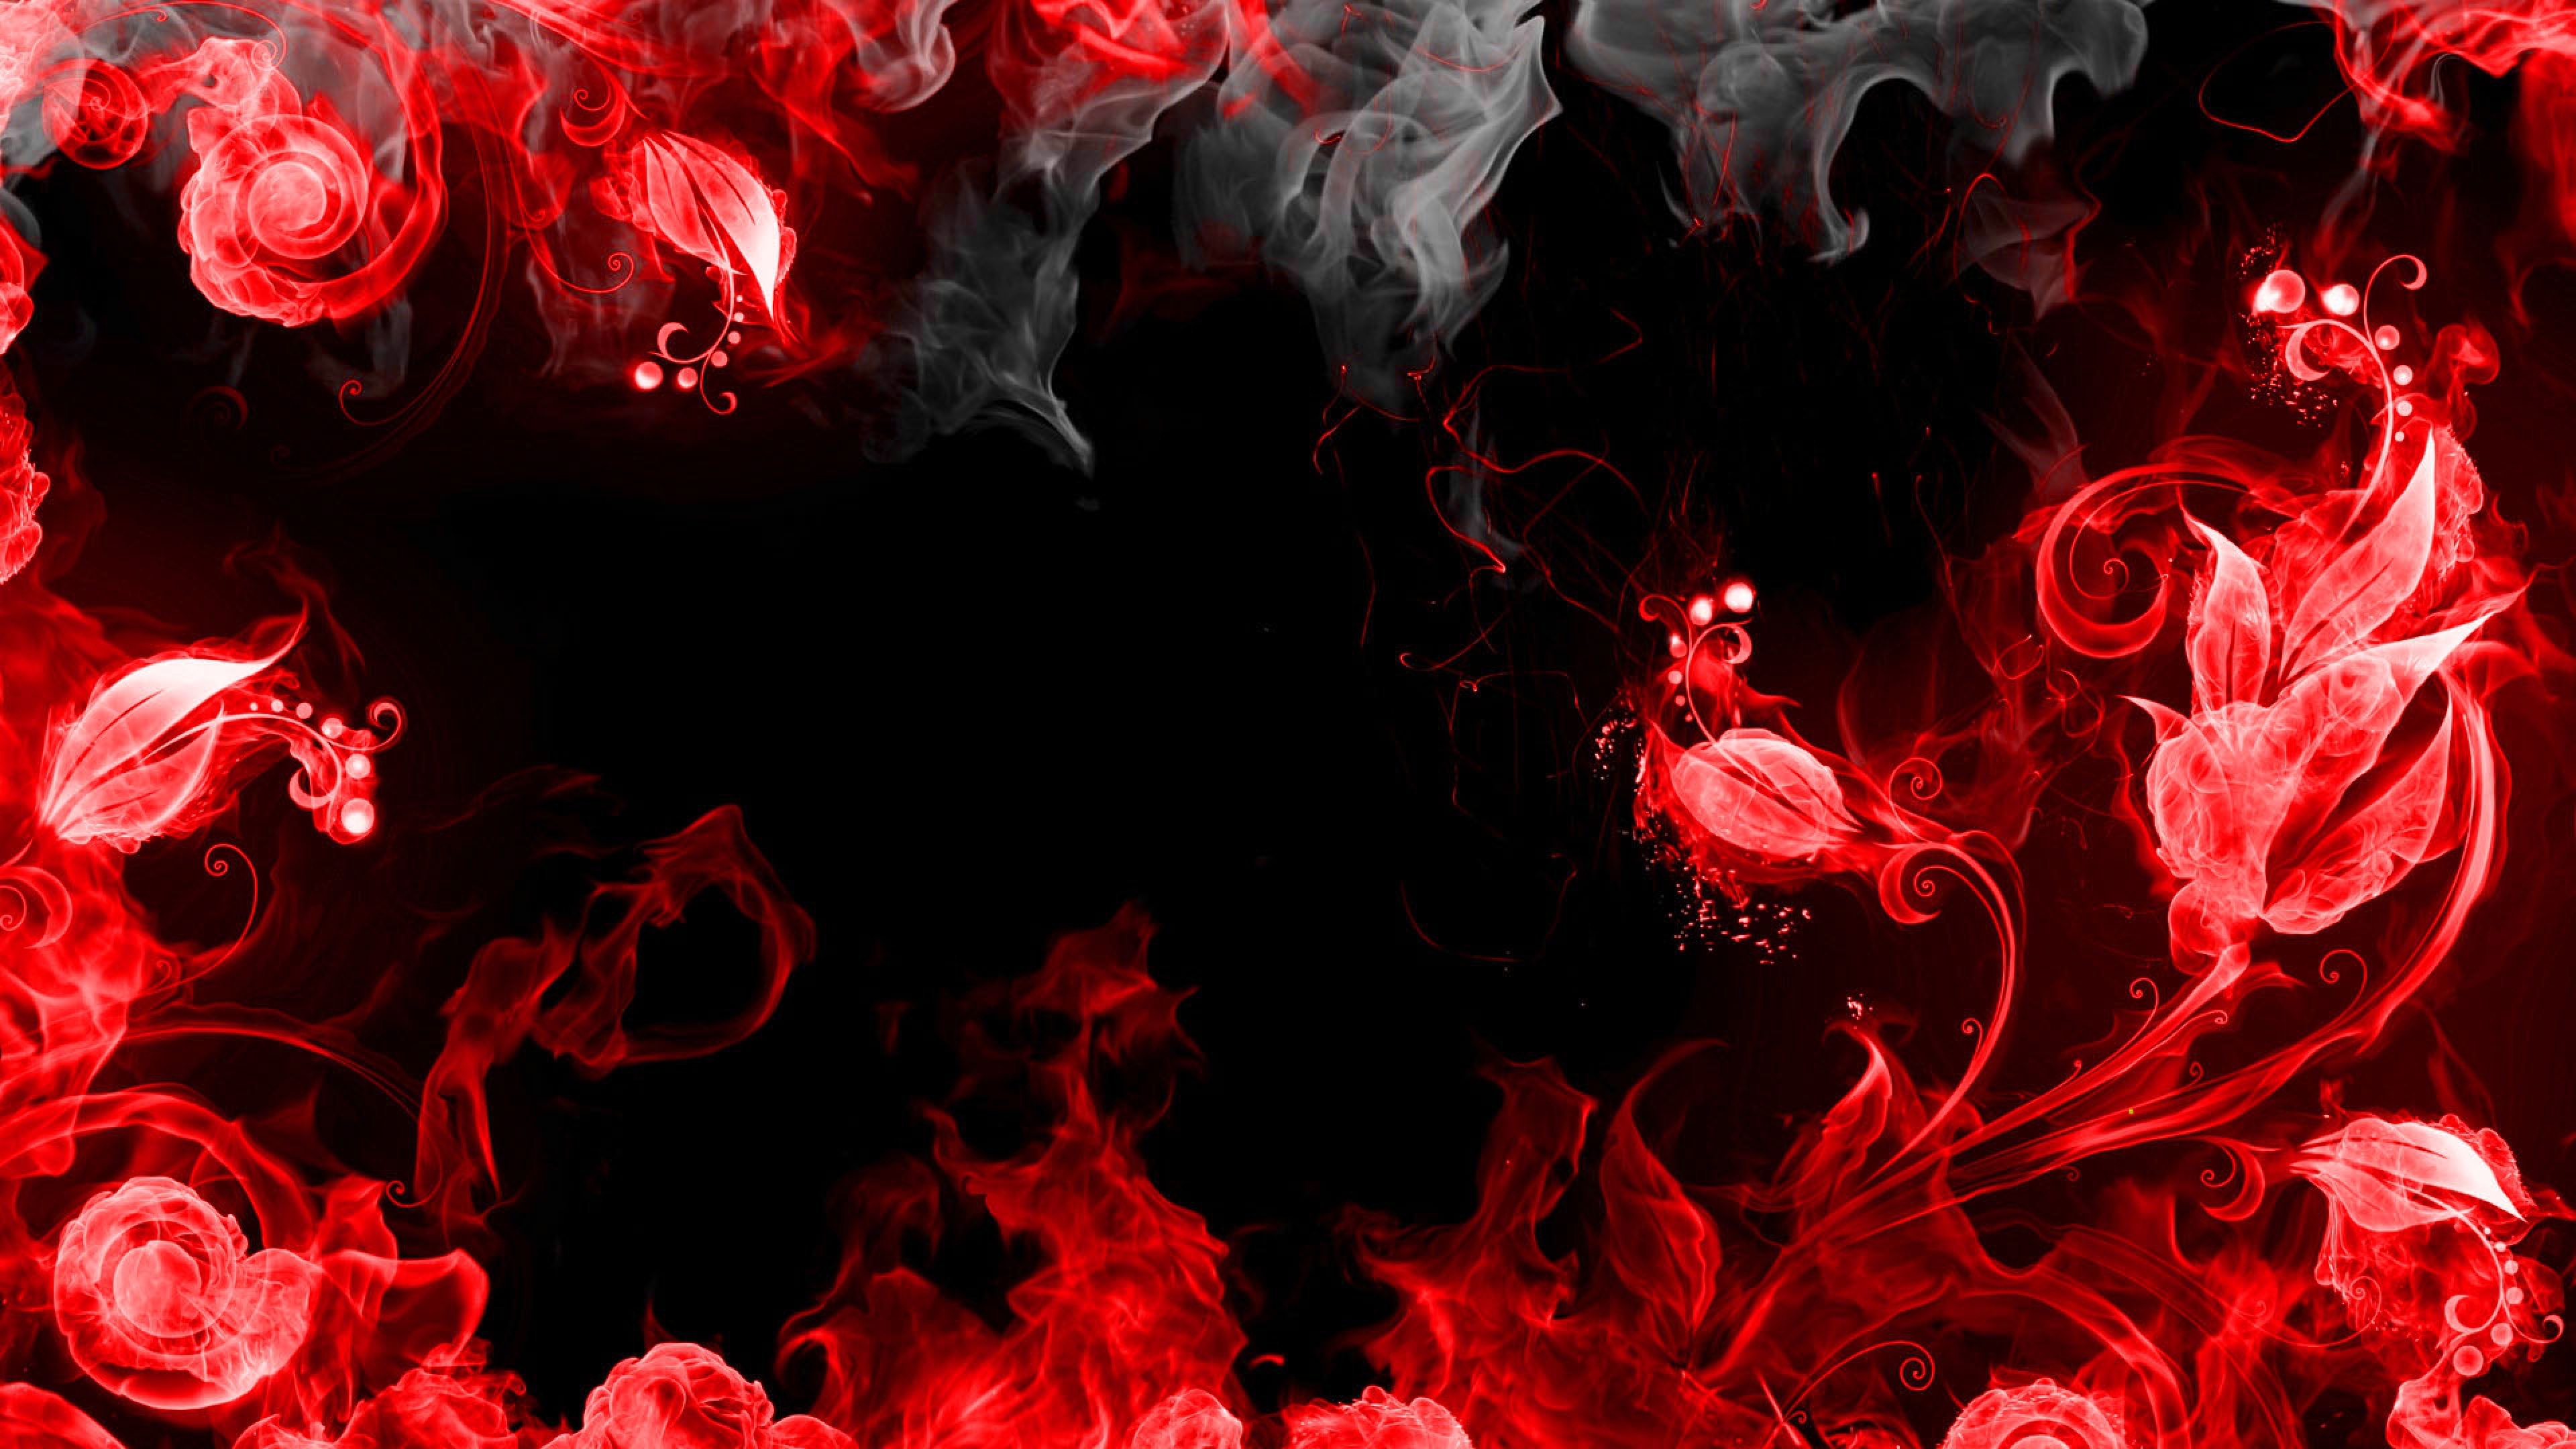 Red and Black 4K Wallpaper - WallpaperSafari